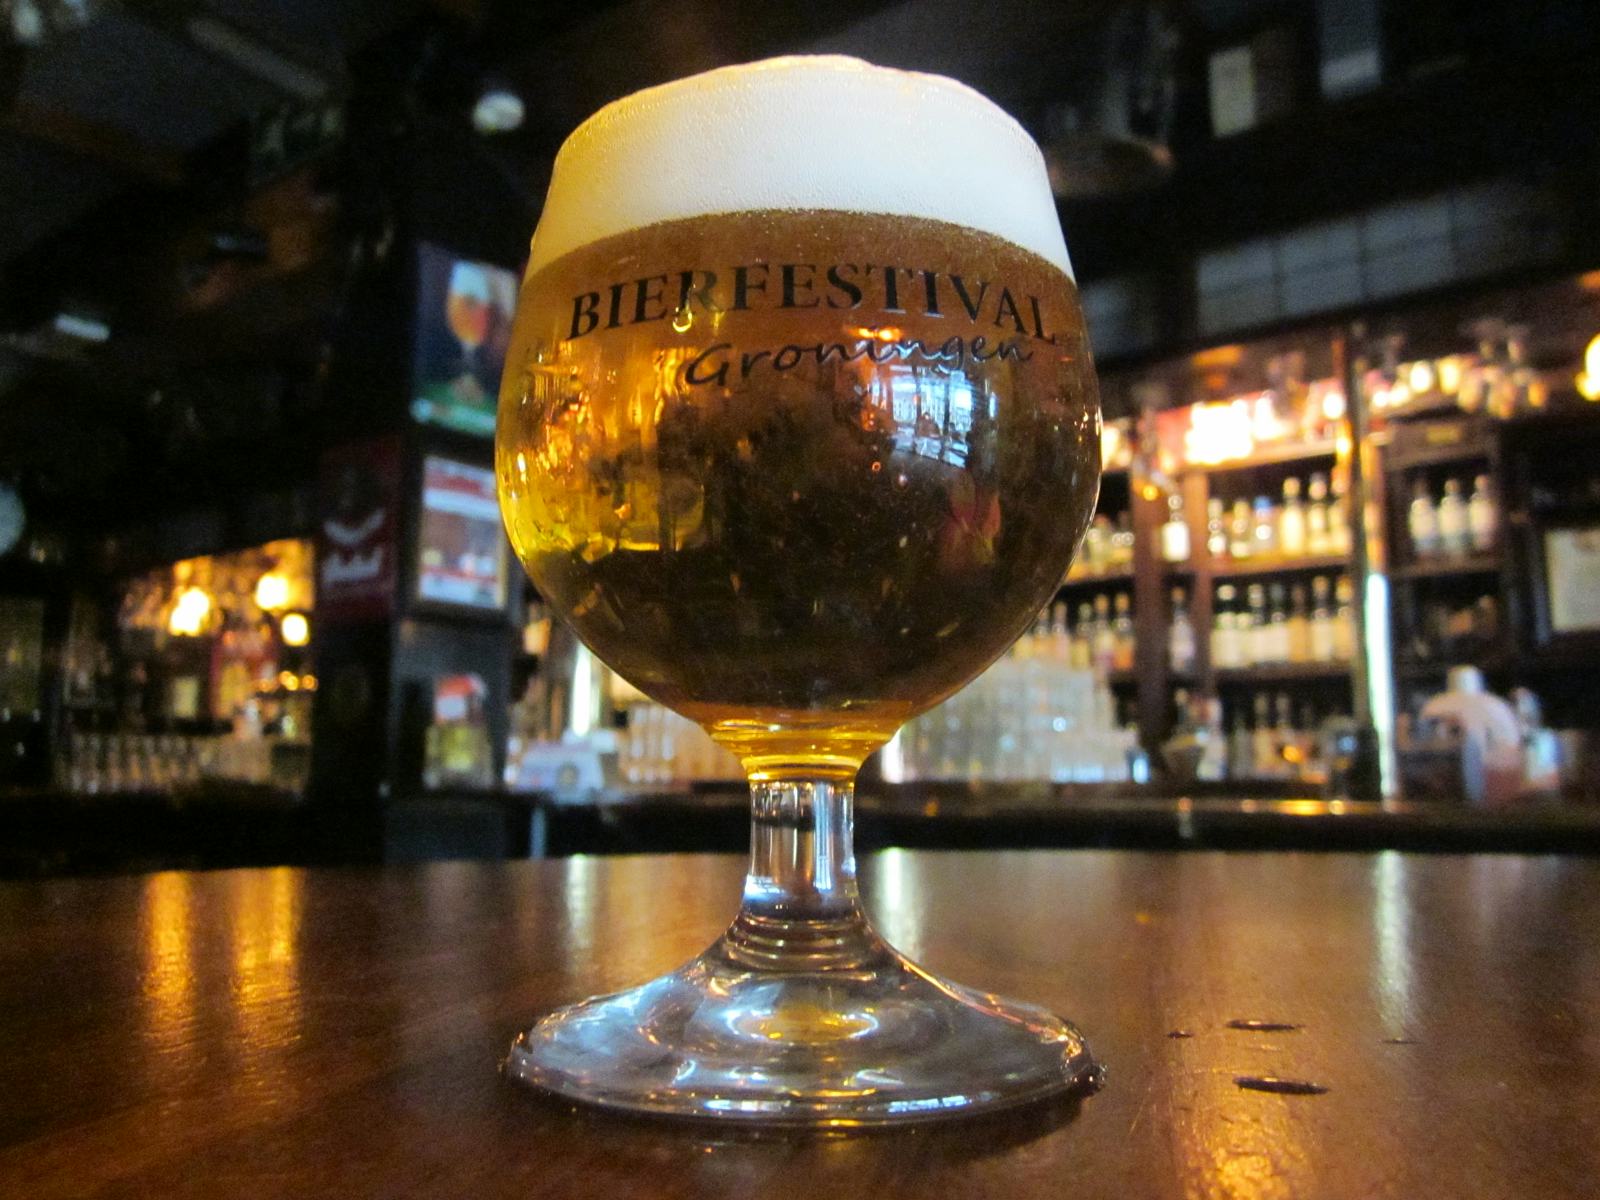 Bierfestival Groningen op 12 en 13 april